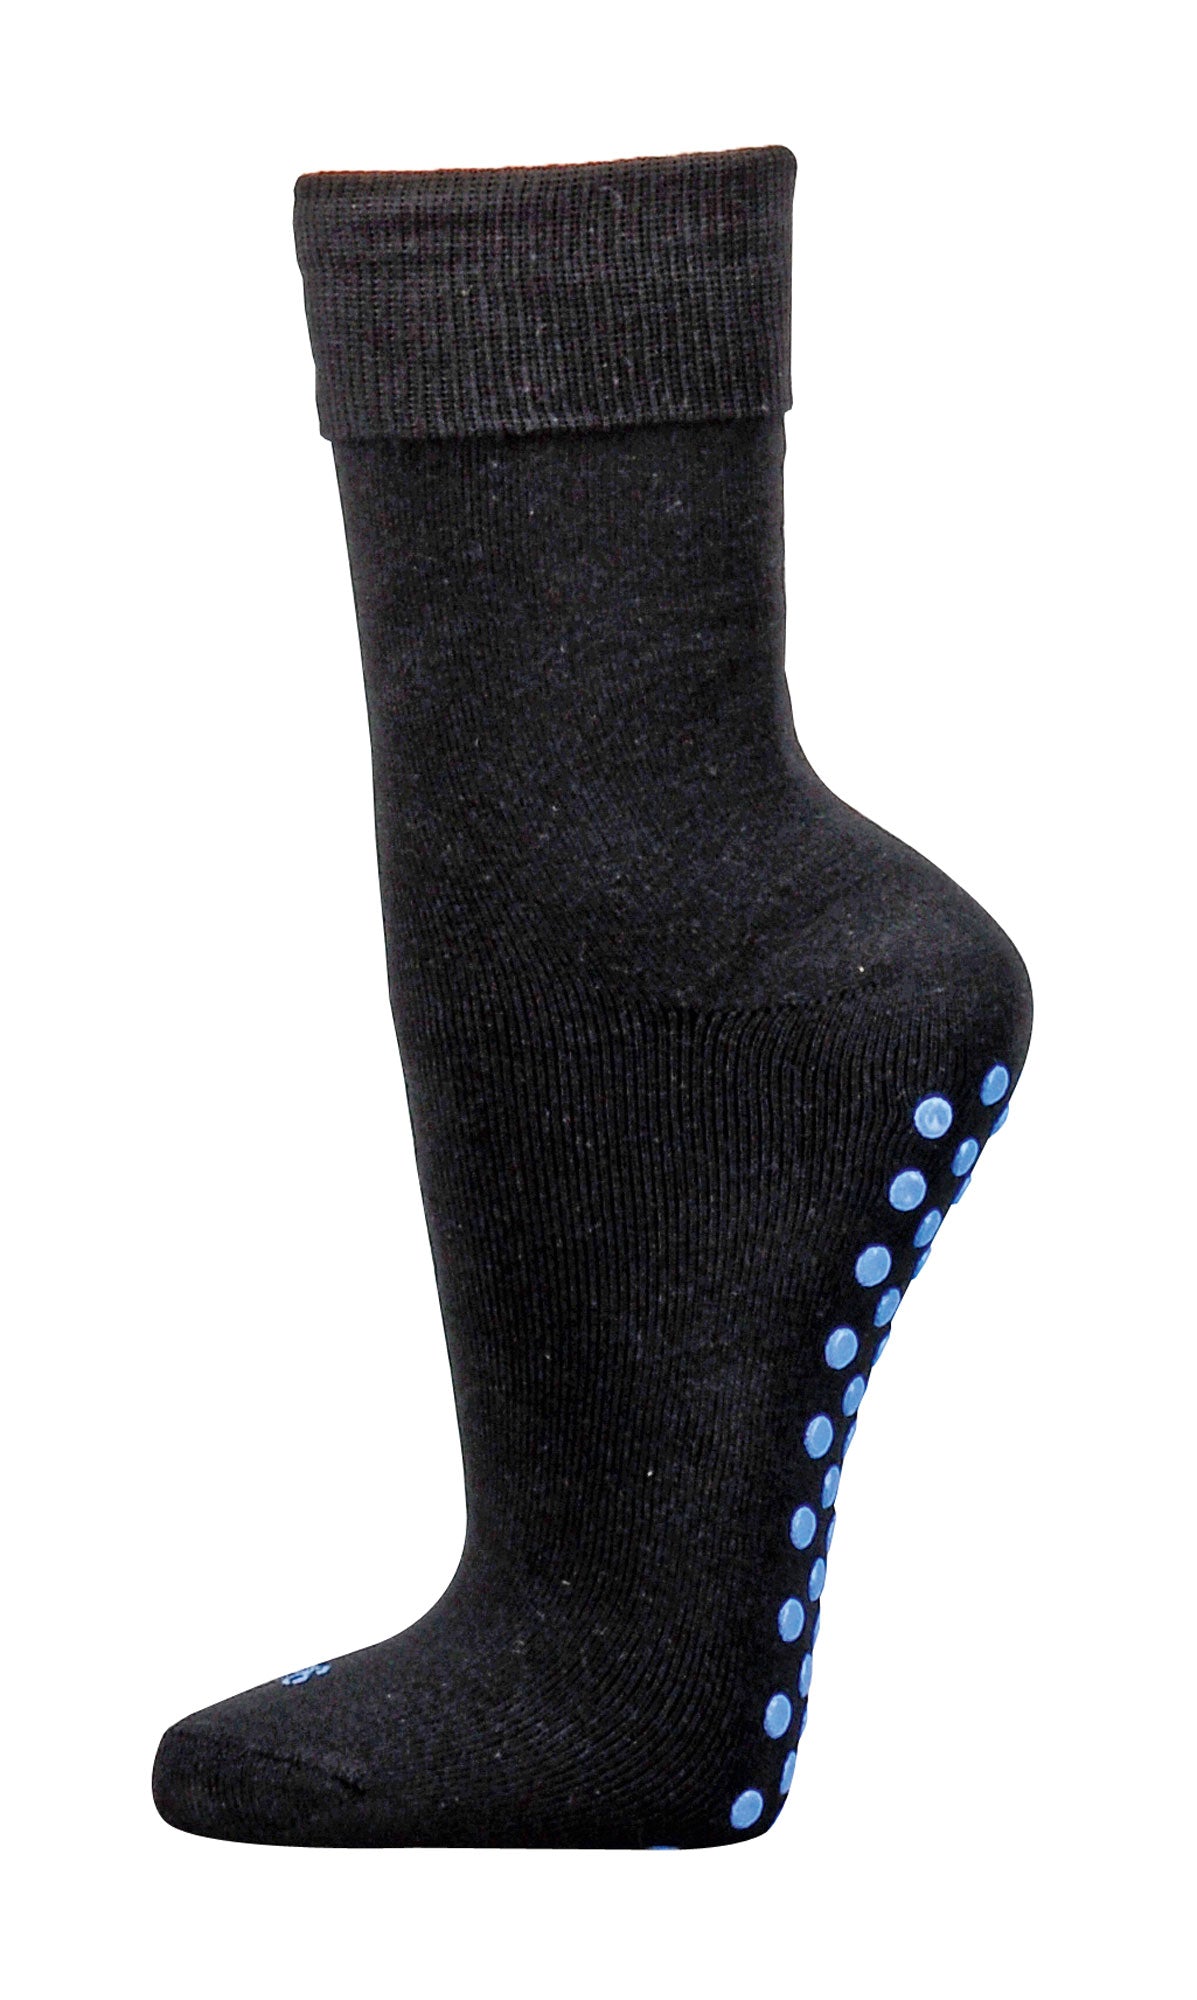 2-6 Paar ABS Socken Stoppersocken Bauwolle Damen Herren Kinder Gr. 35-50